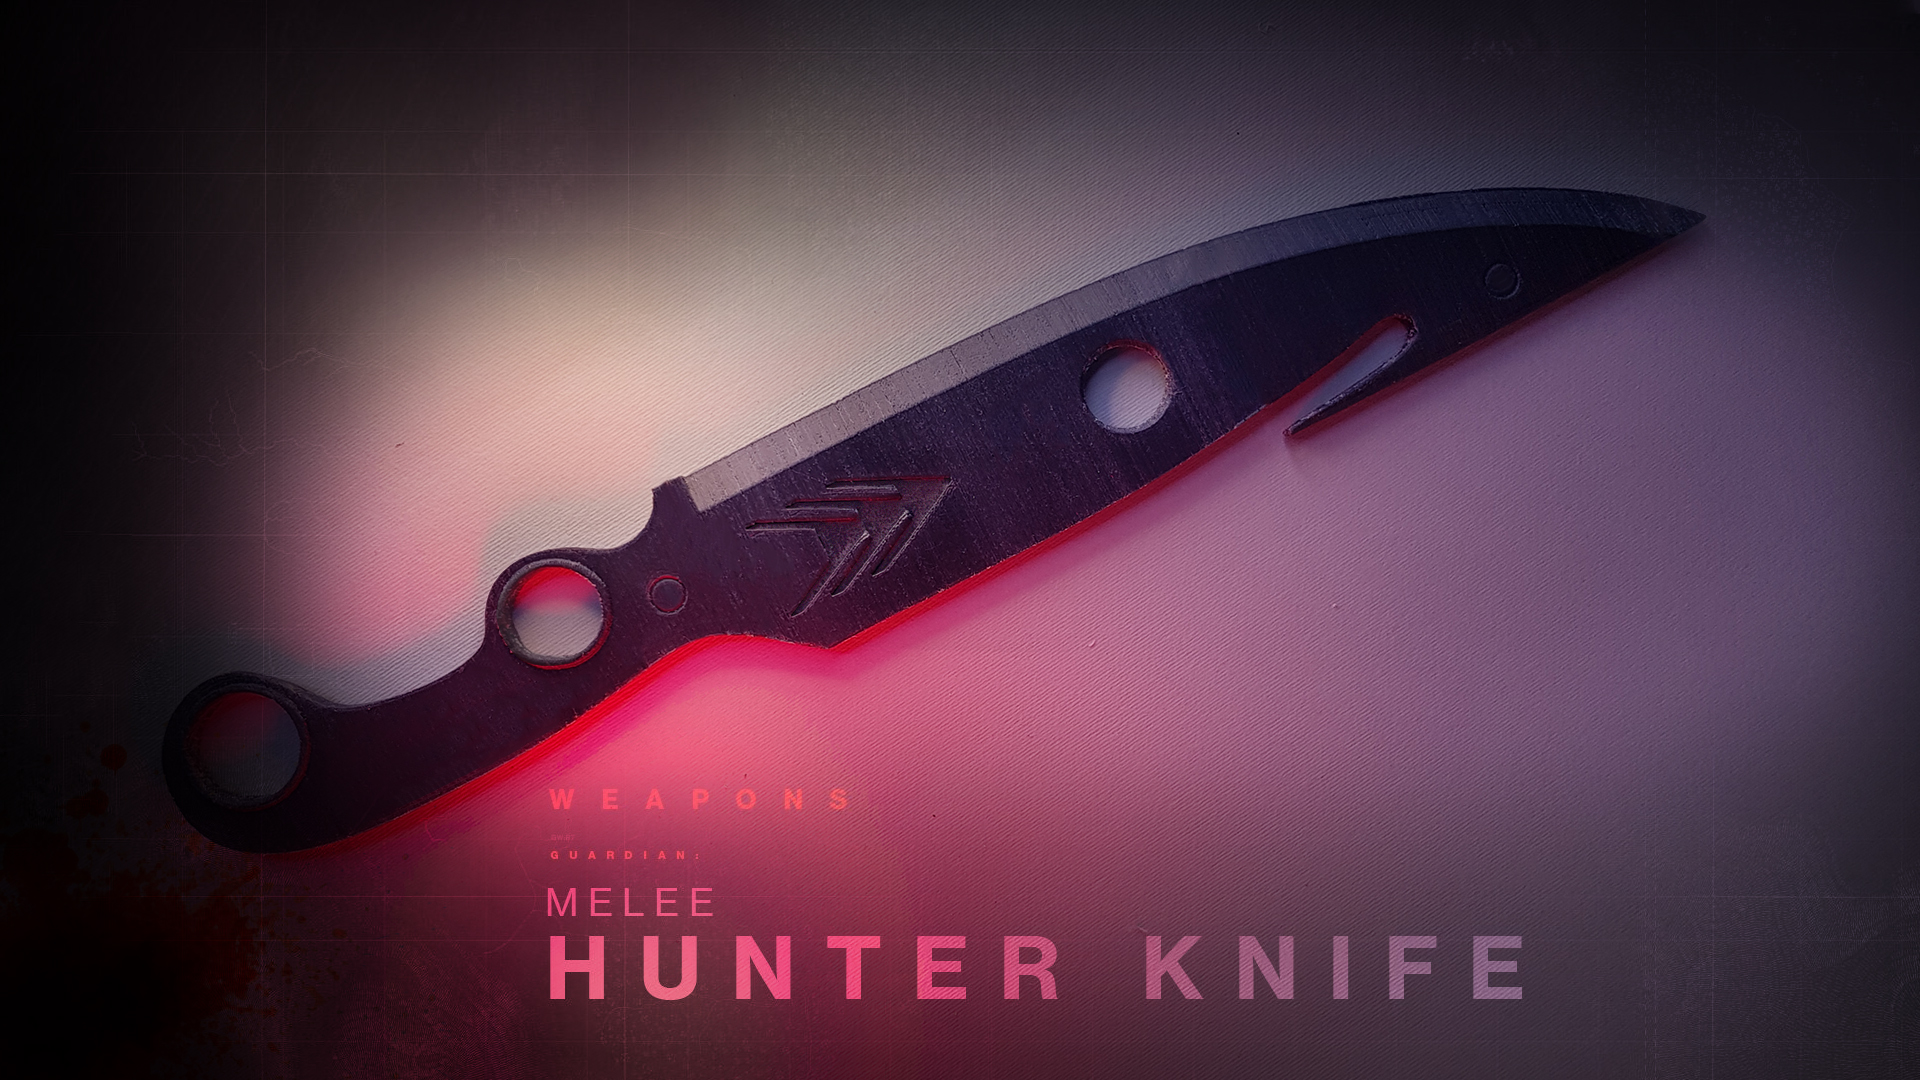 Destiny 2 HNTER KNIFE